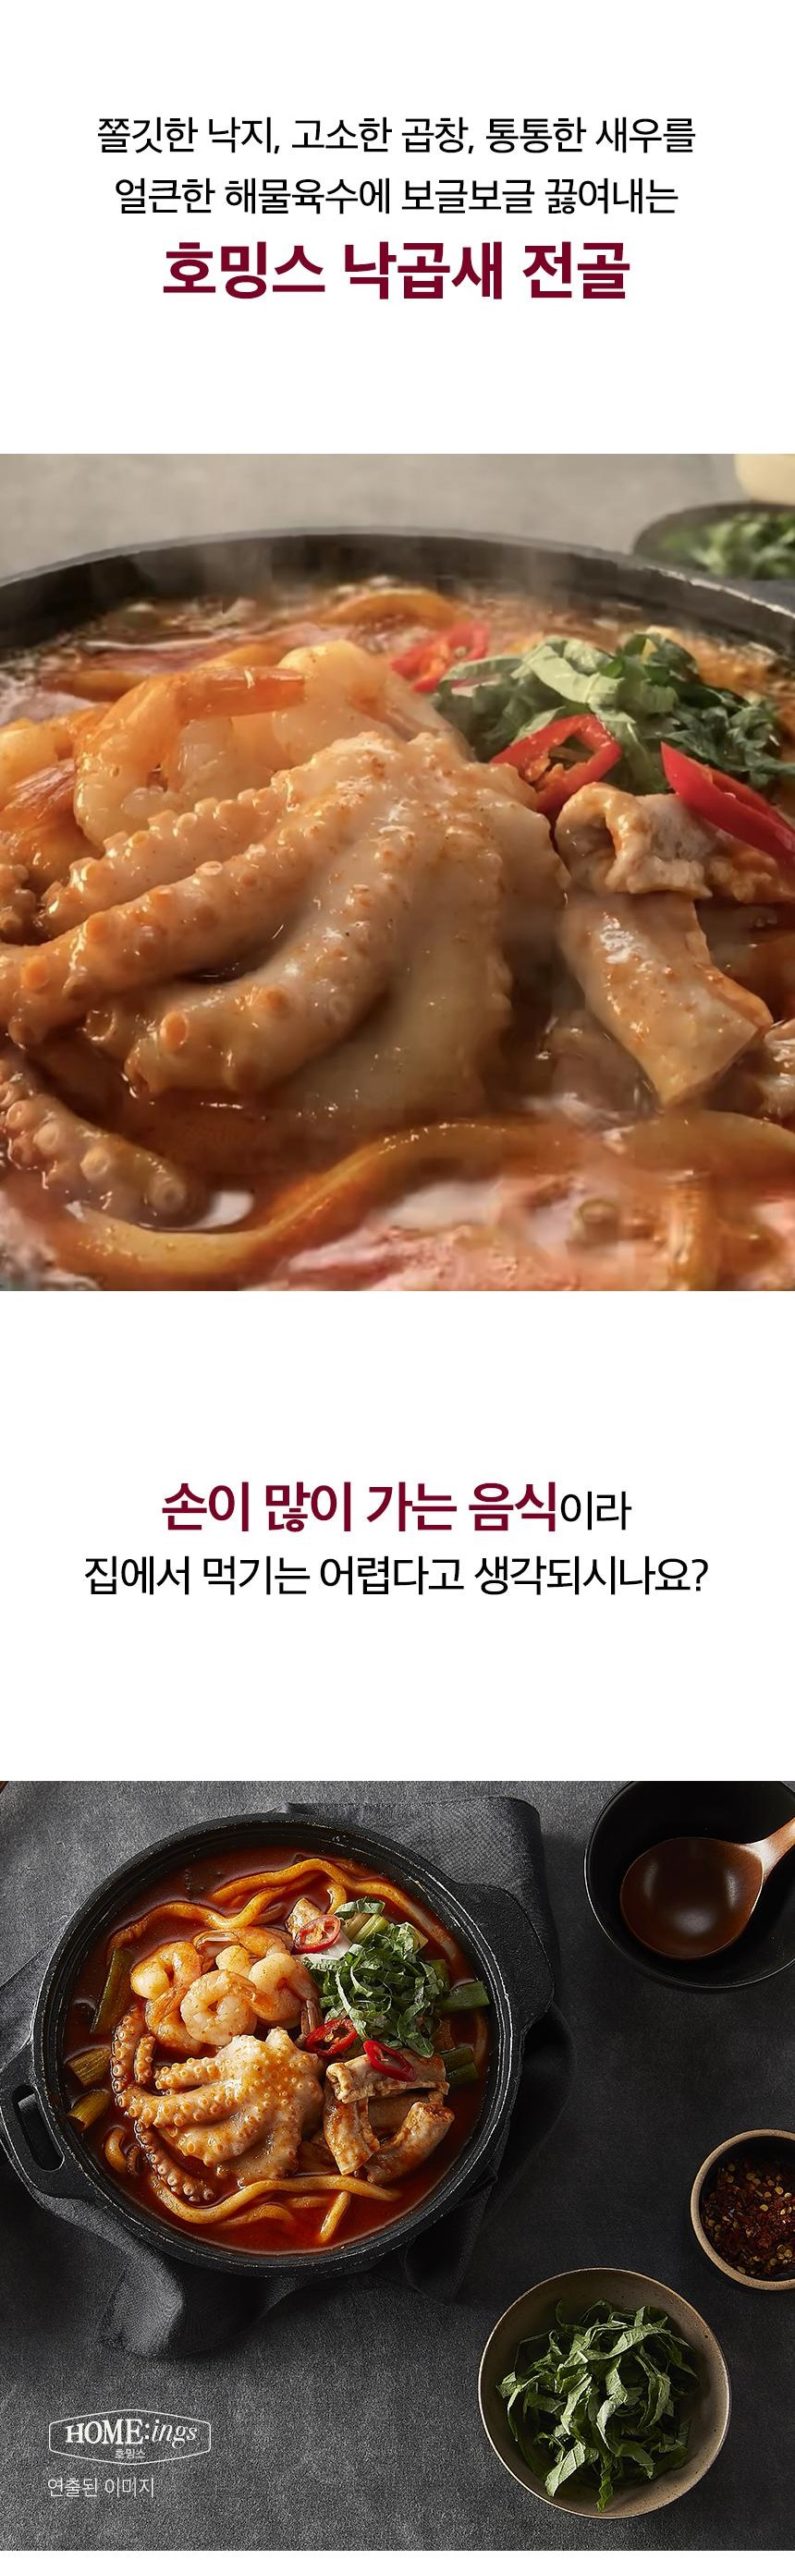 韓國食品-[CJO] Home:ings 章魚牛腸蝦子鍋 800g